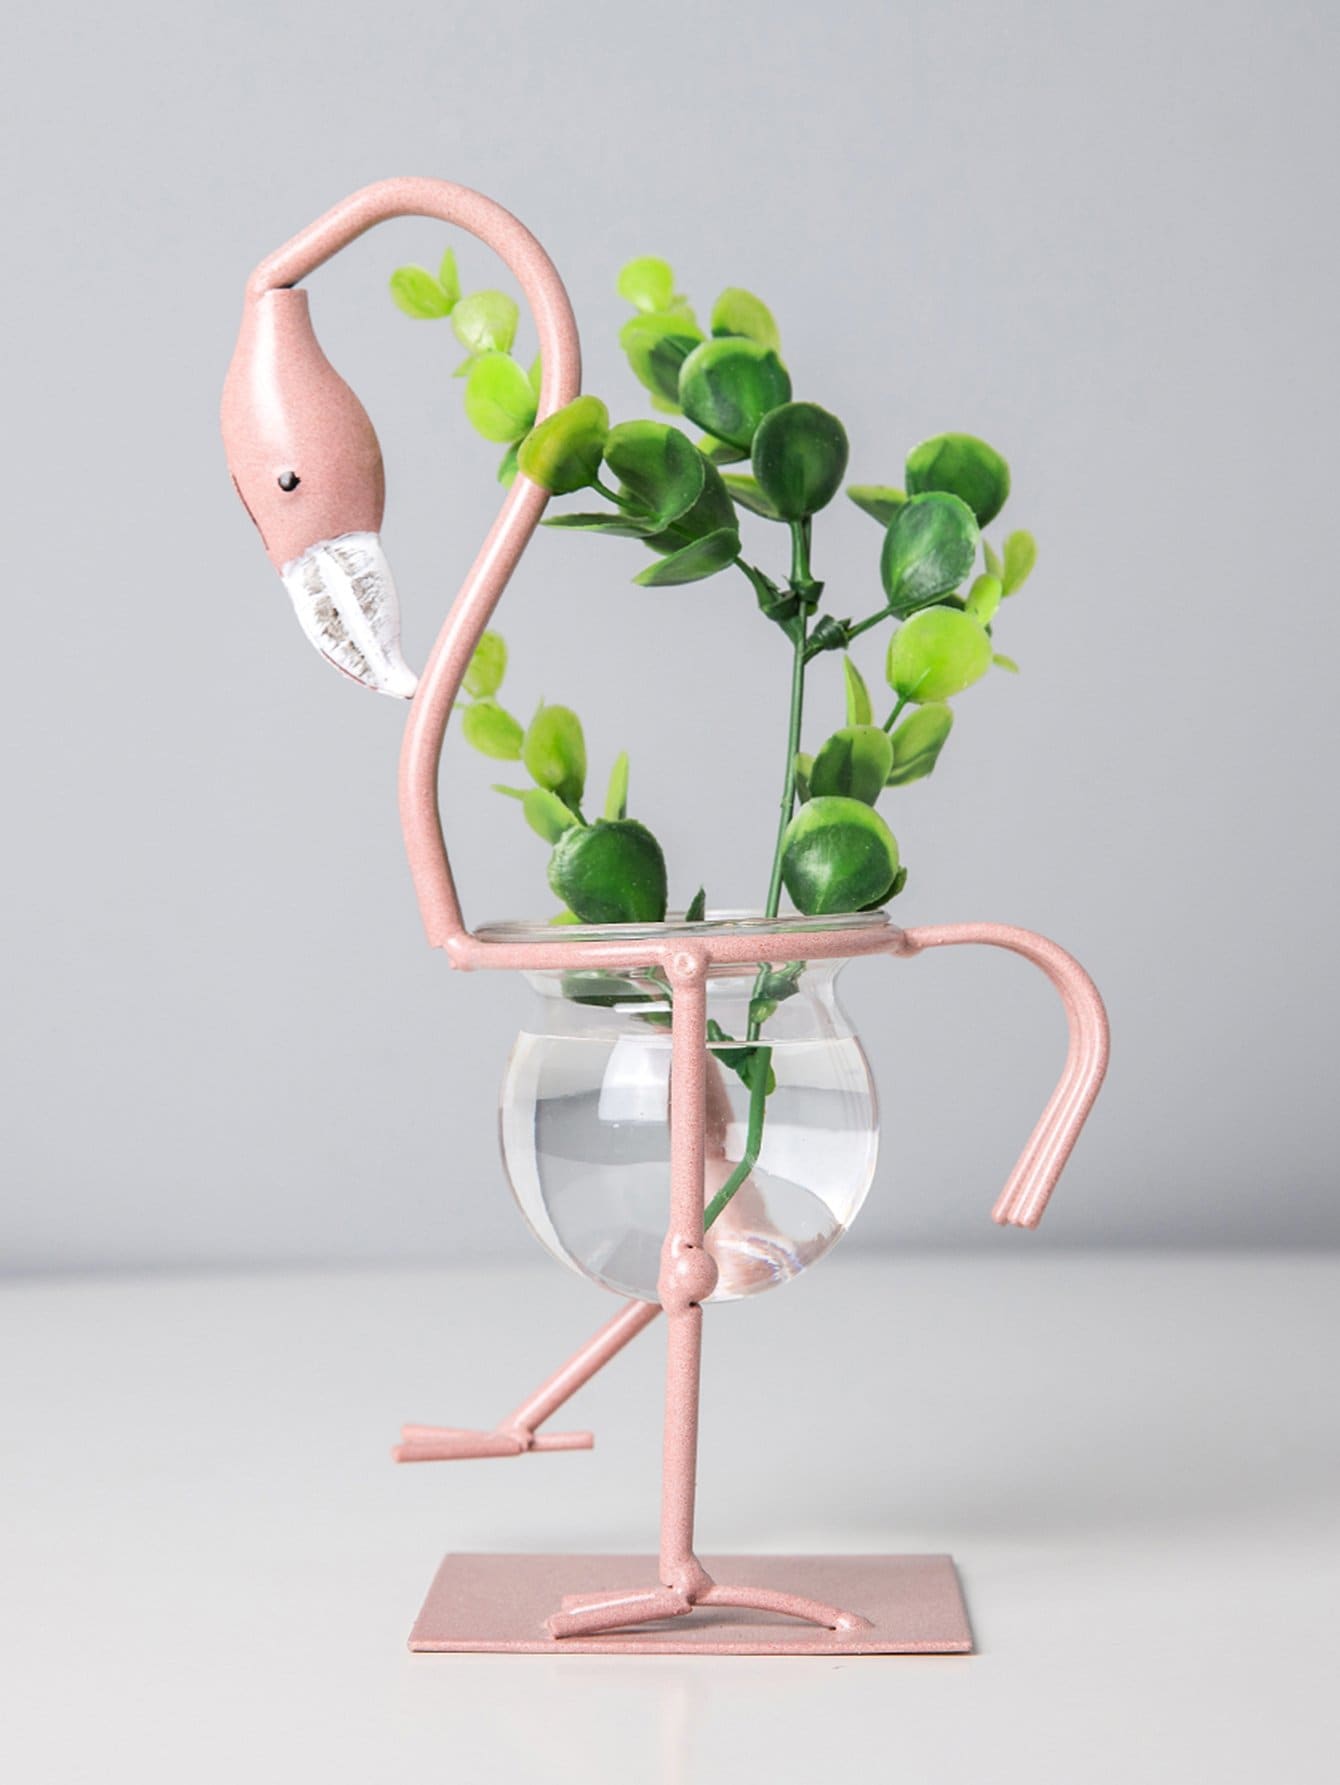 Flamingo Shaped Decorative Object